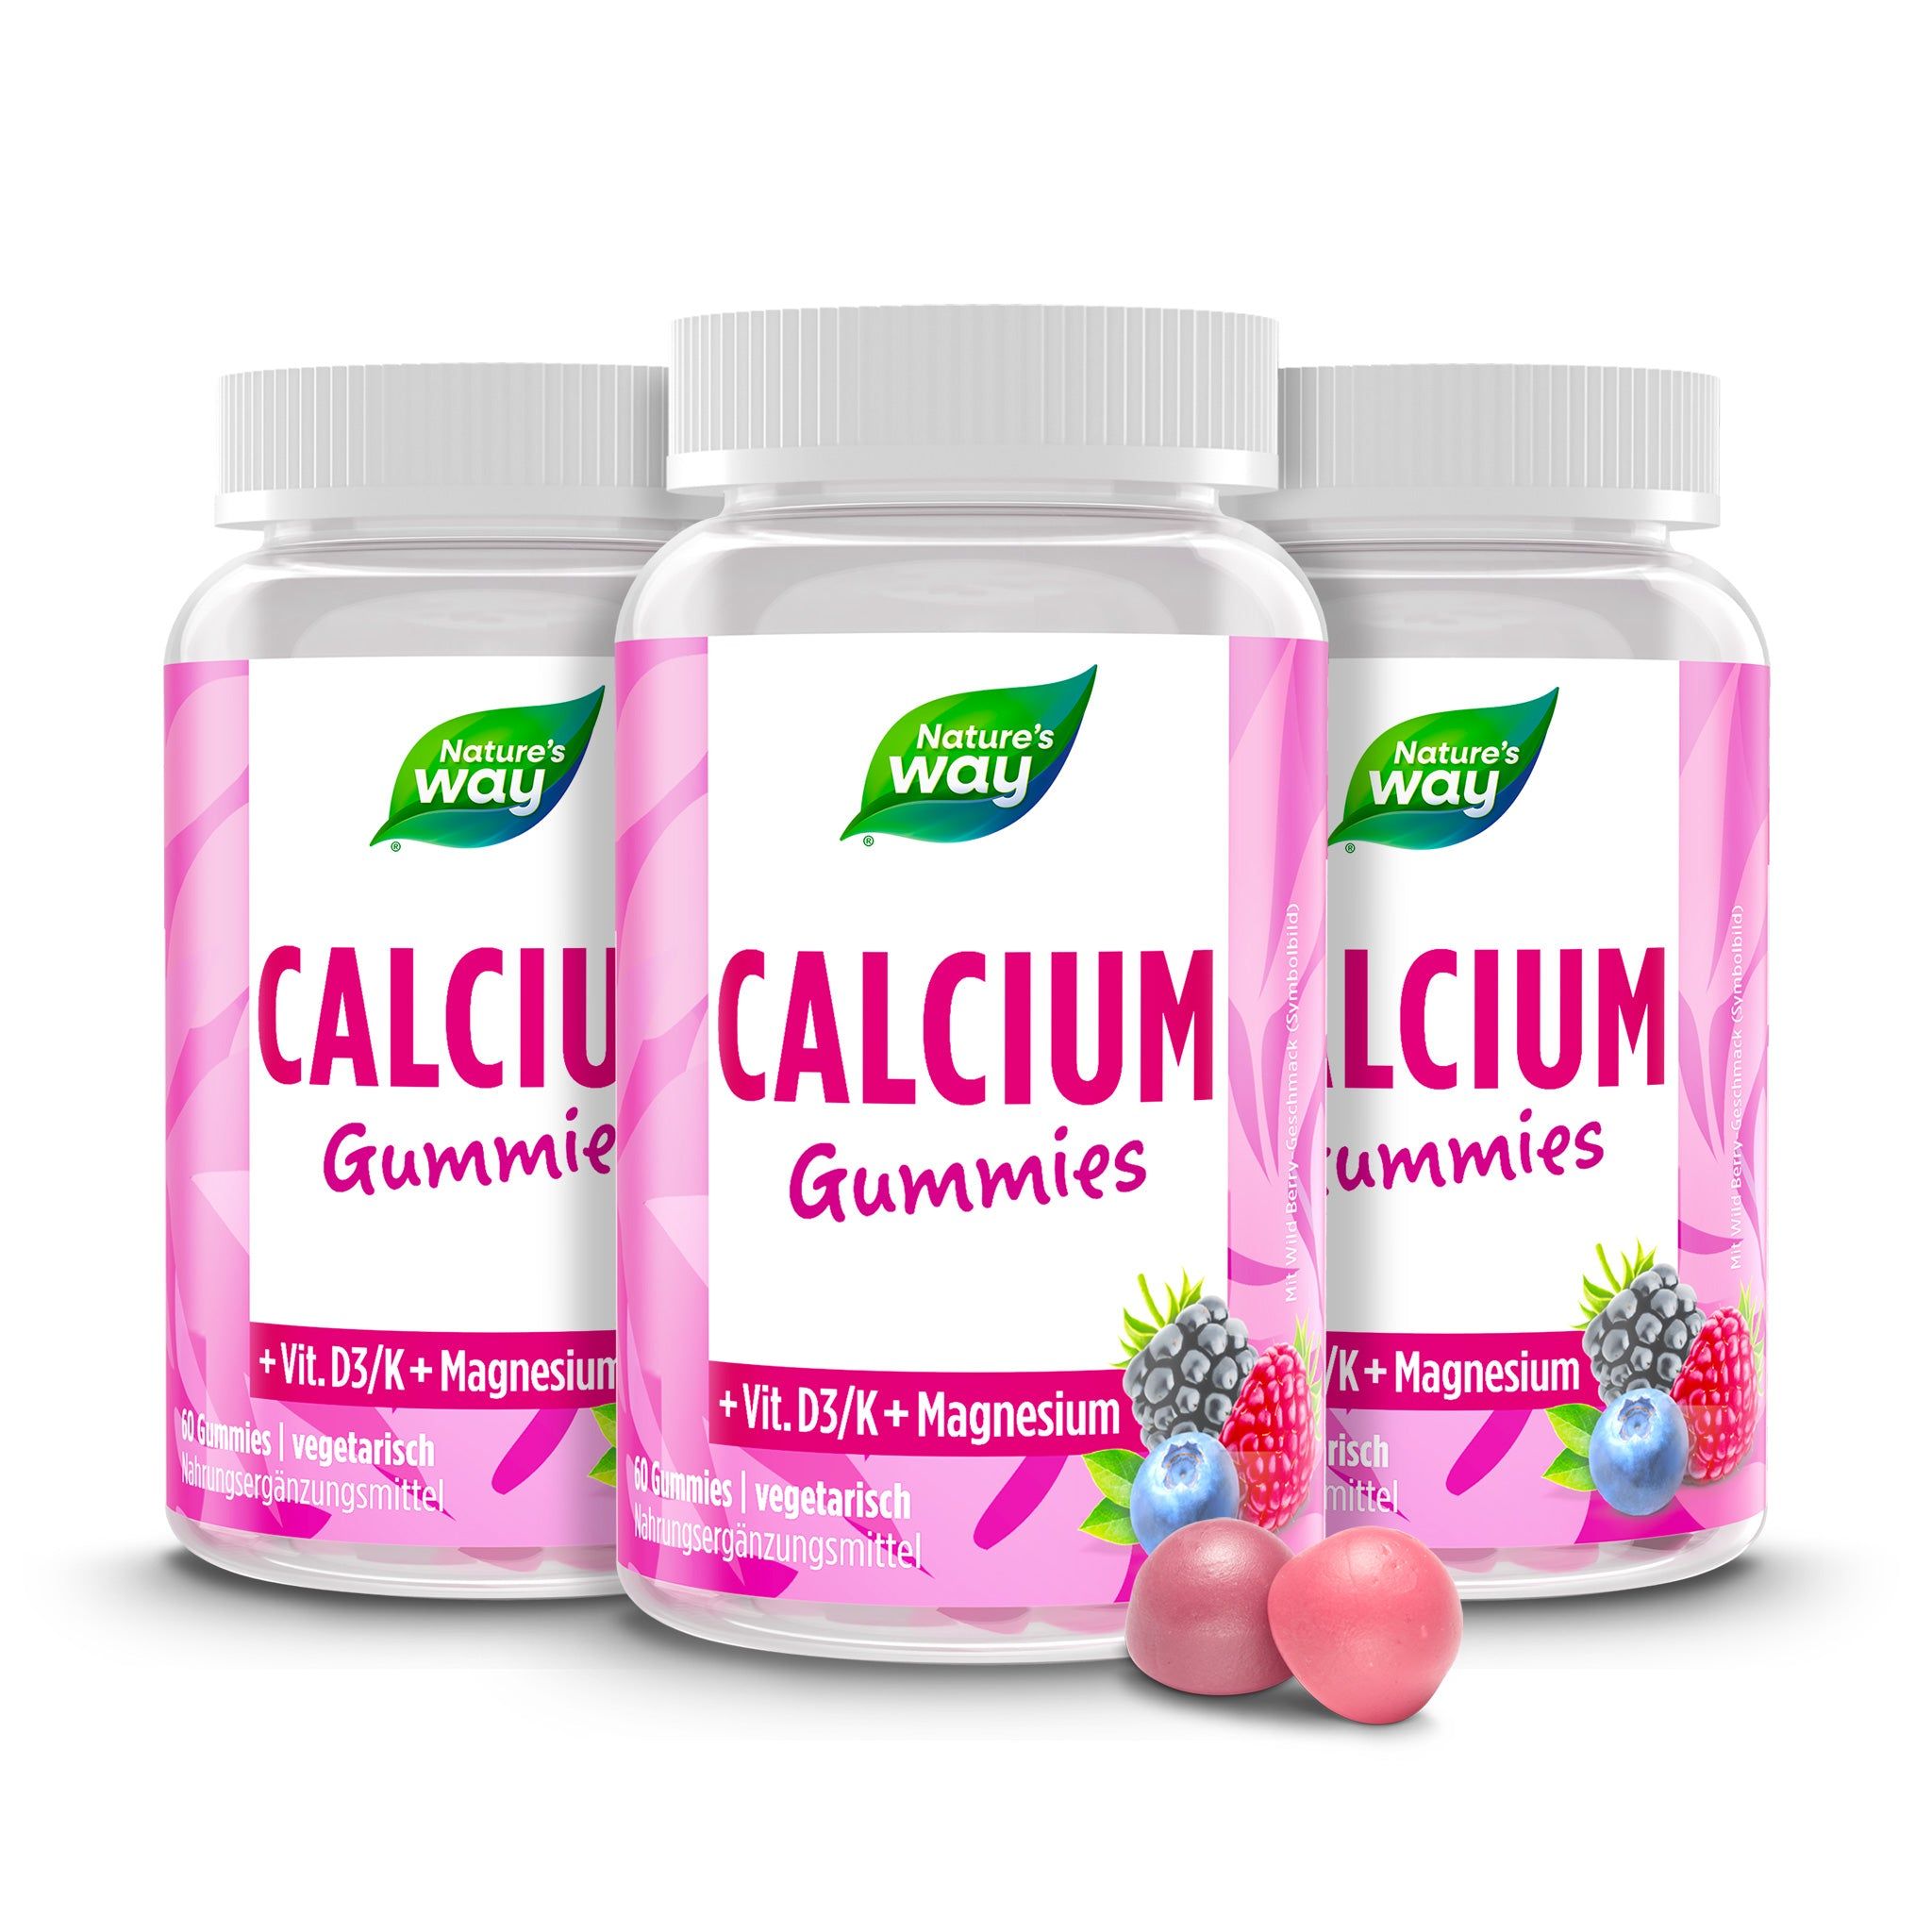 3x Nature's Way Calcium Gummies